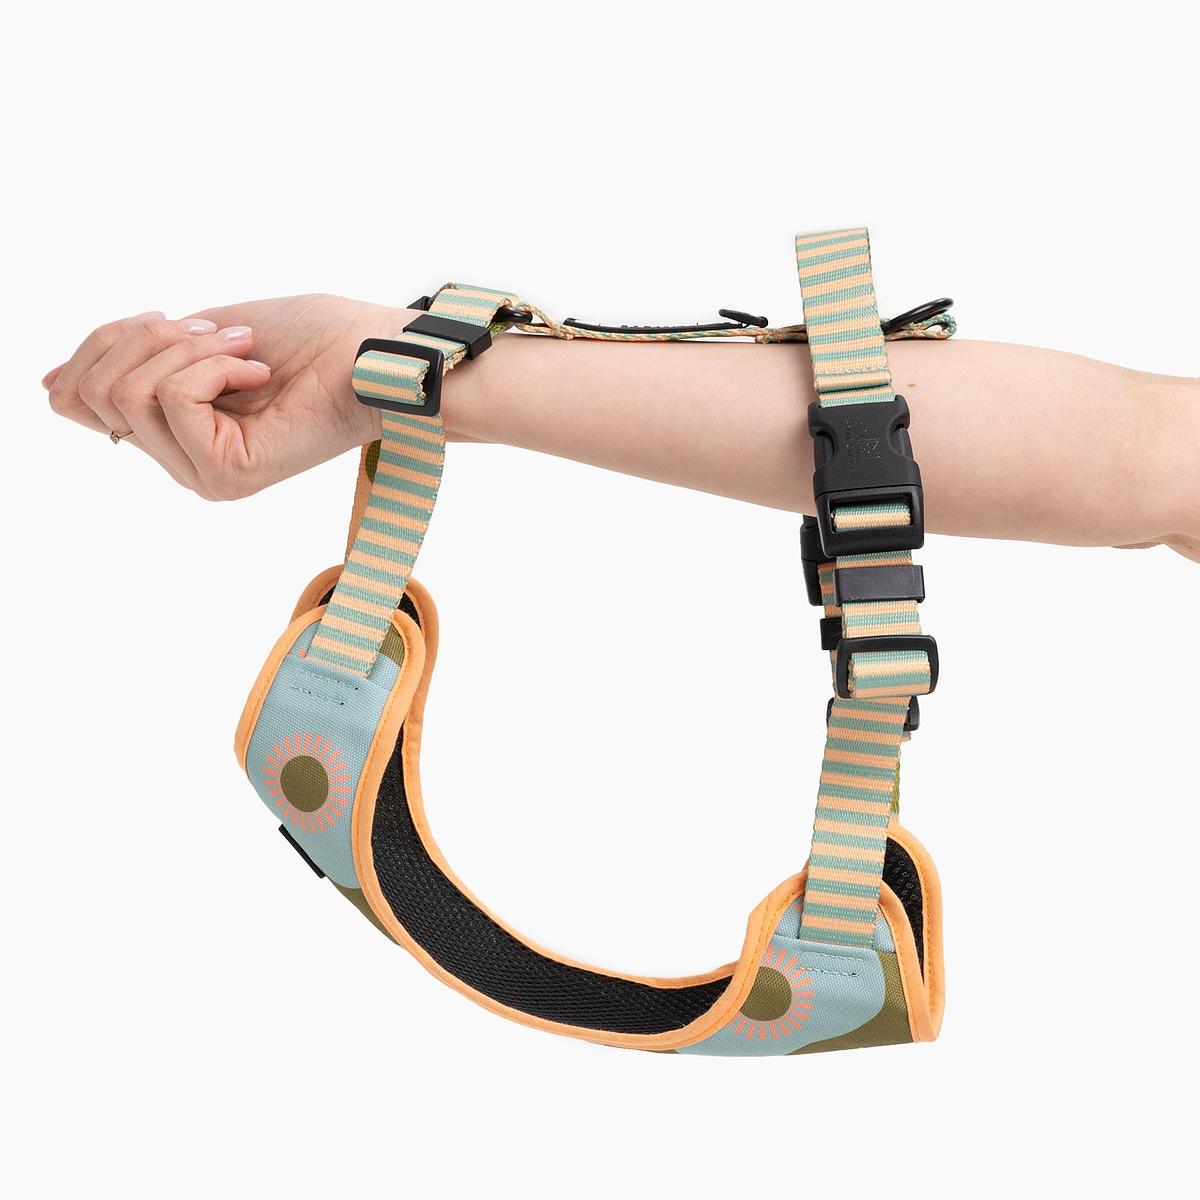 "Sausage dog" pressure-free harness